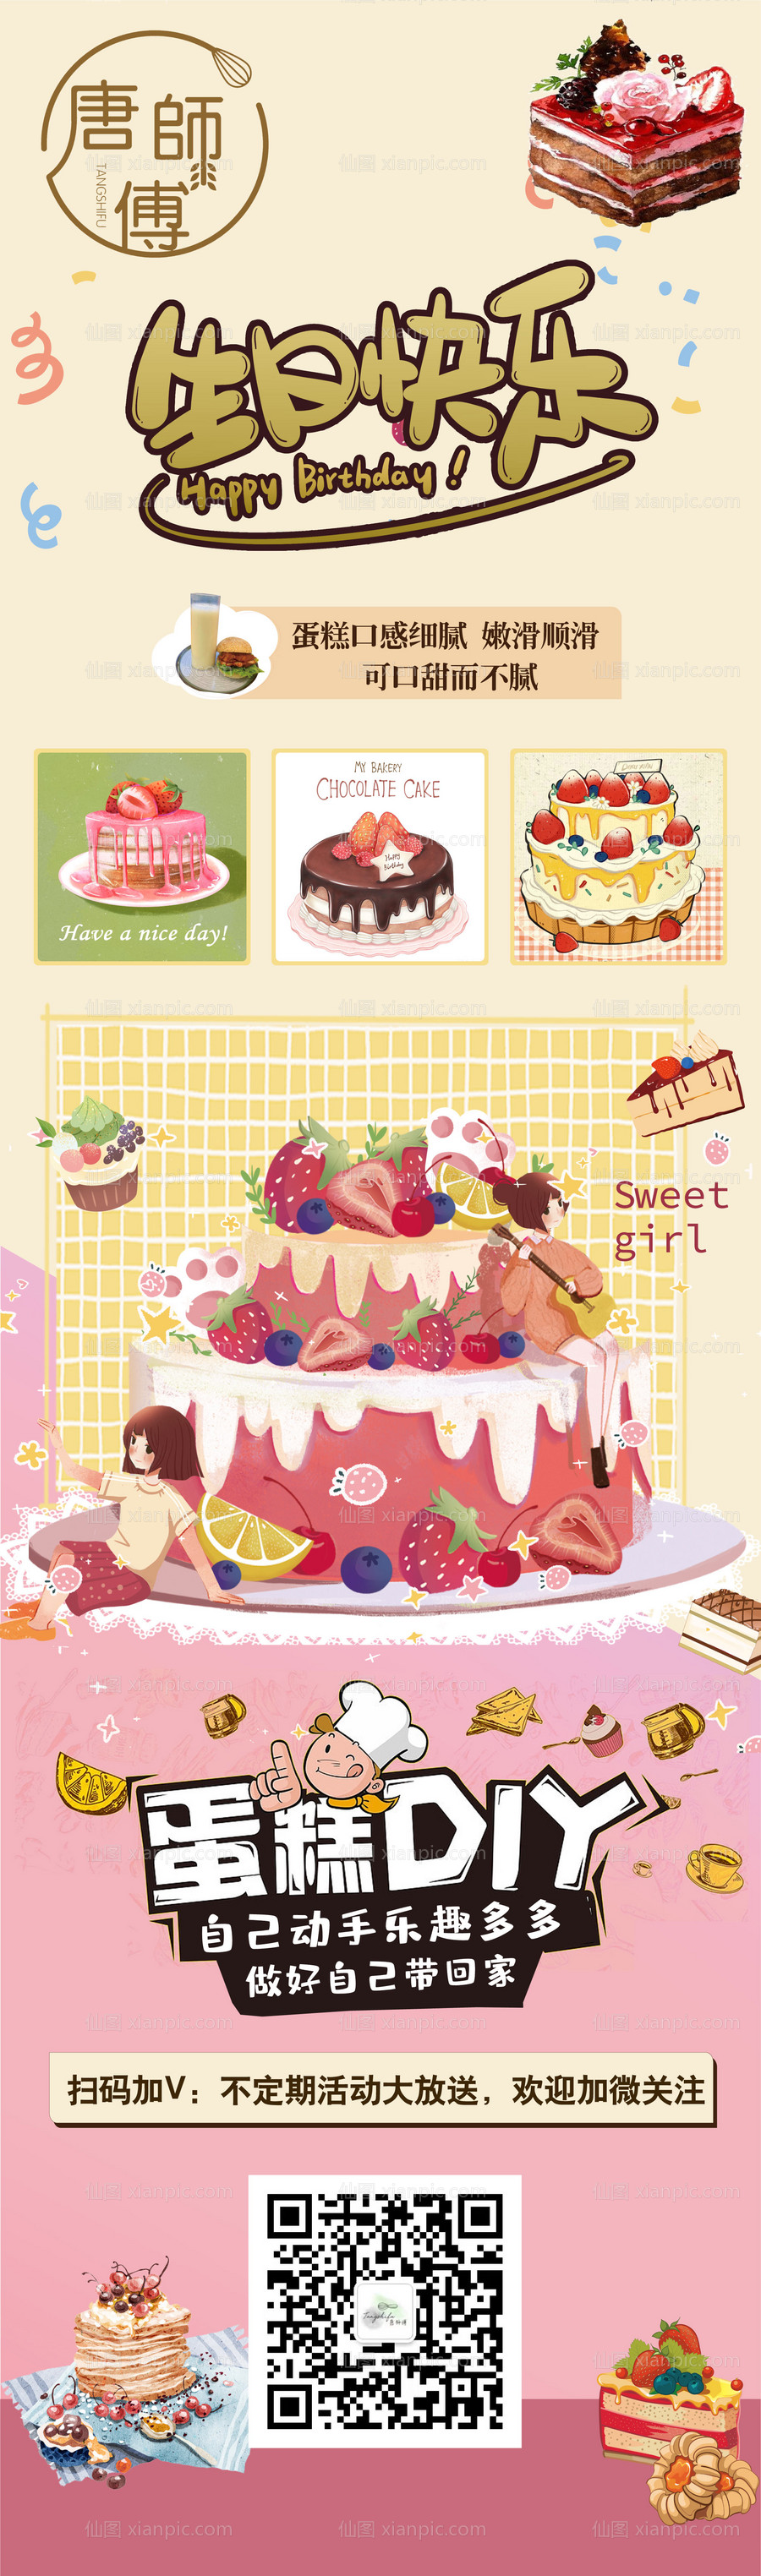 素材乐-蛋糕店宣传海报